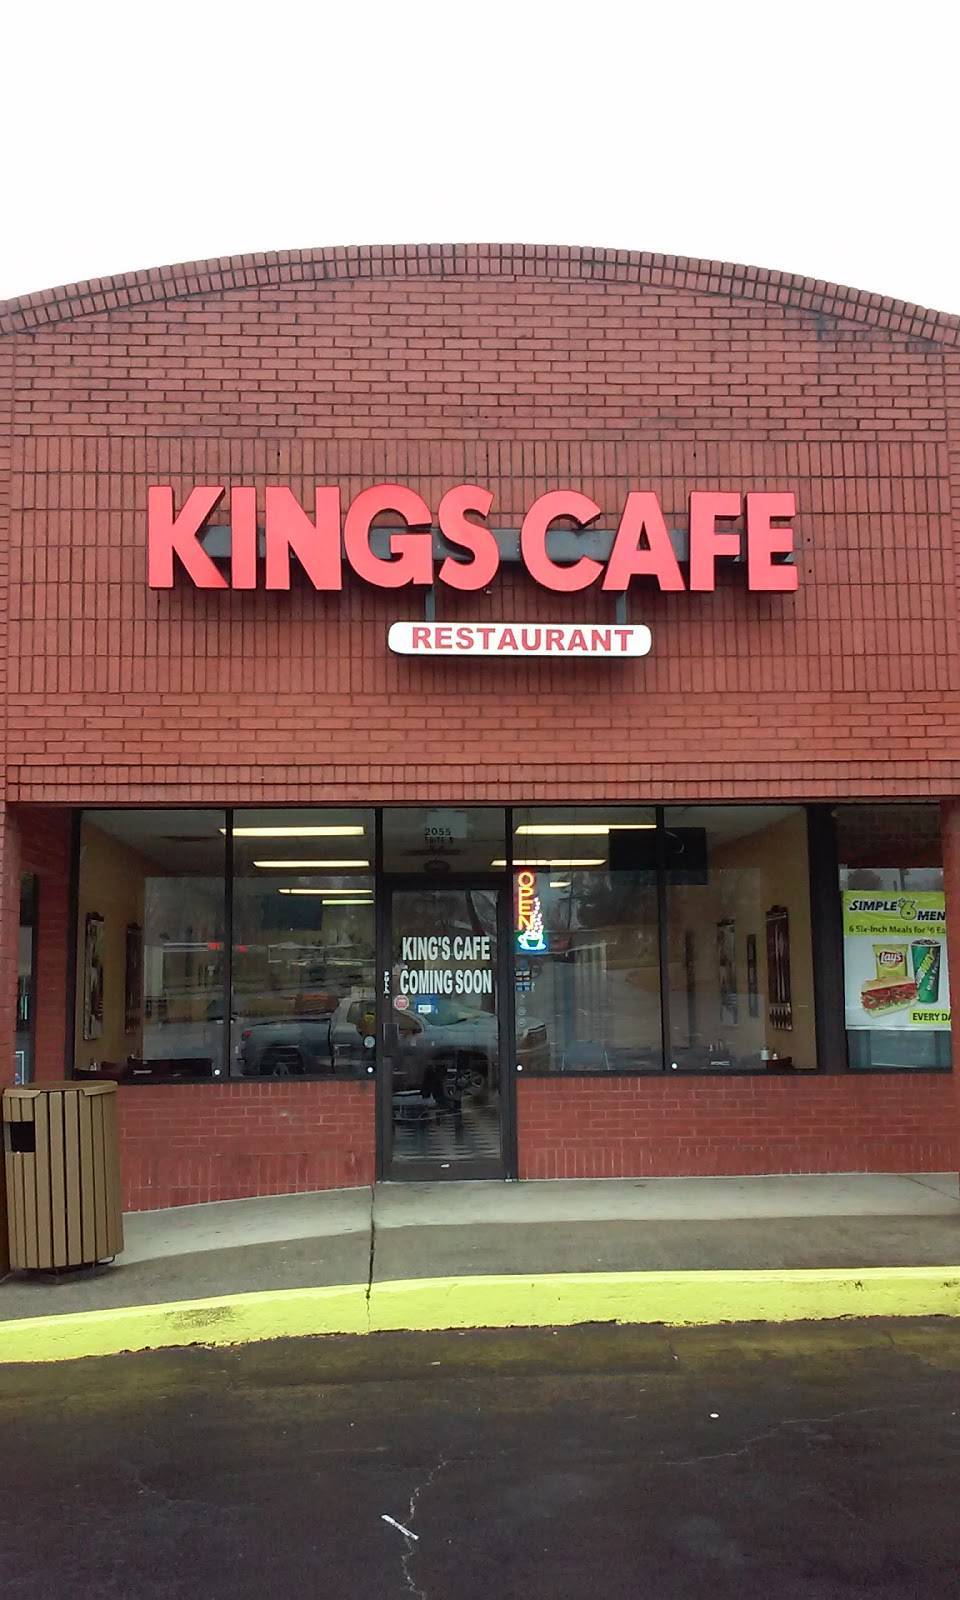 Pupuseria Kings Cafe | restaurant | 2055 Beaver Ruin Rd, Norcross, GA 30071, USA | 4702755225 OR +1 470-275-5225